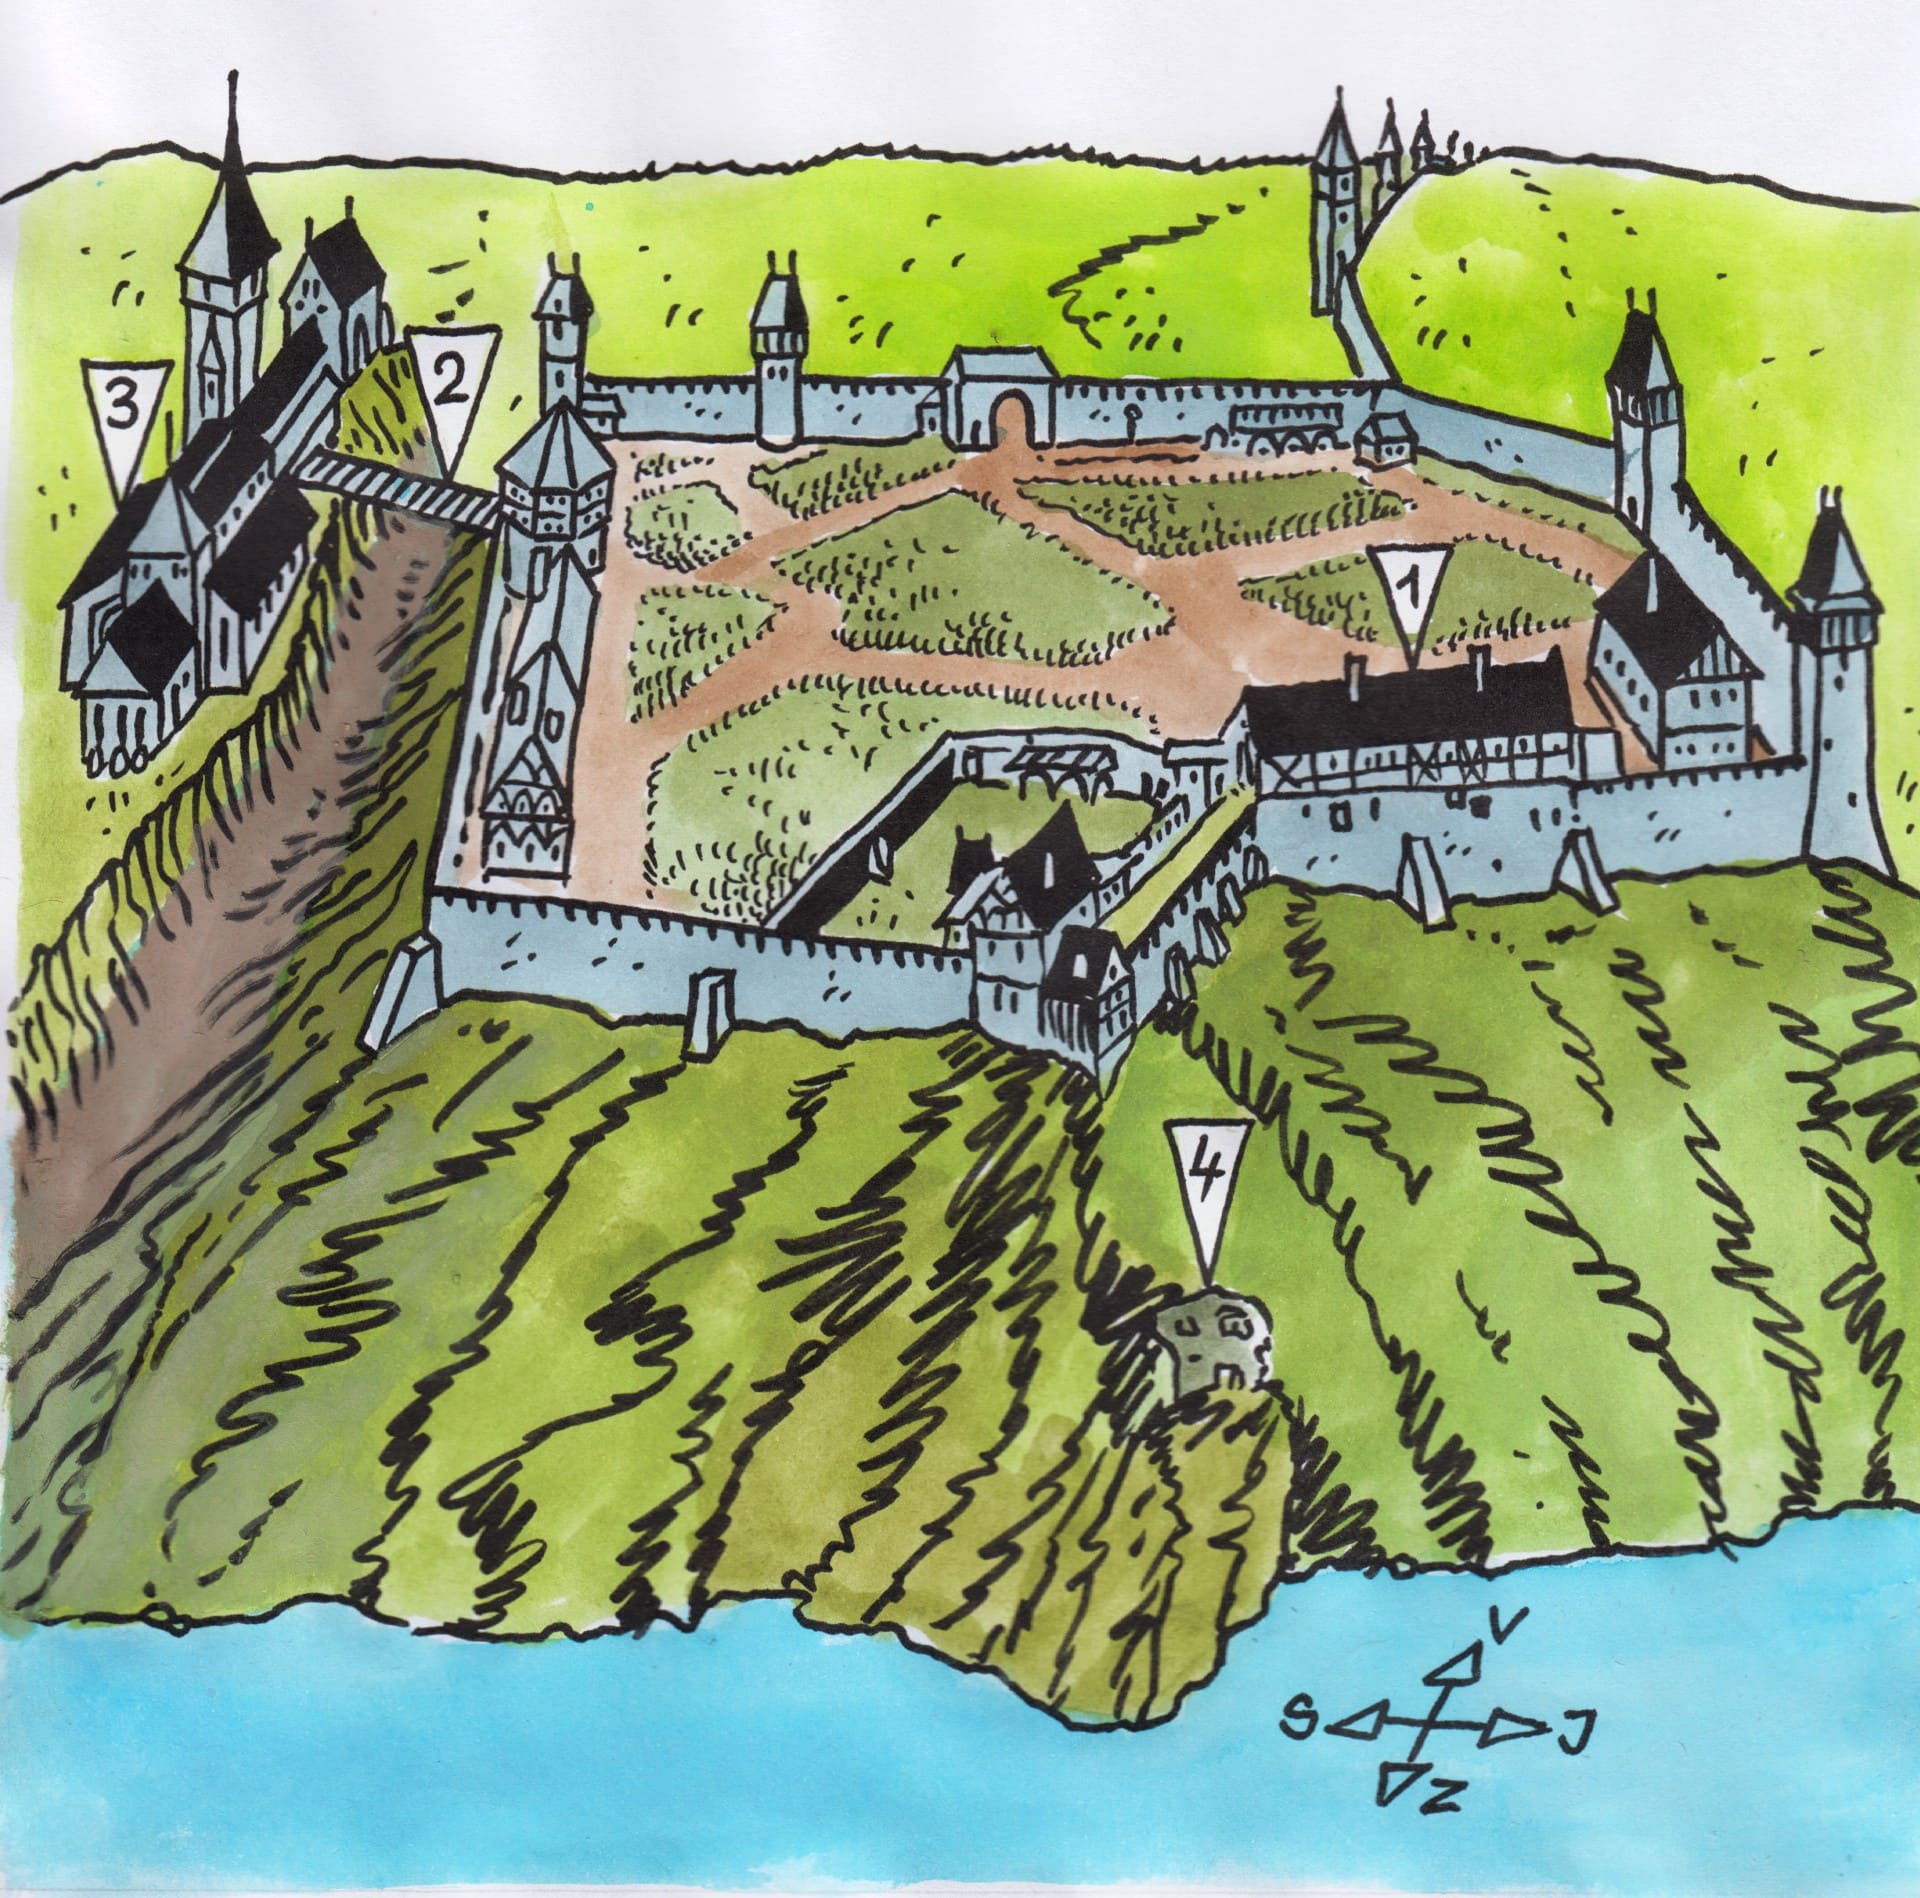 Ilustrace Jiřího Filípka, která vznikla podle podkladu Ing. arch. Ondřeje Šefců, zachycuje hradiště Vyšehrad, jak vypadalo s největší pravděpodobností v roce 1378. Kresba je přetažena se souhlasem nakladatelství Grada z mojí knížky „Sídla českých panovníků“, která vyšla roku 2020.